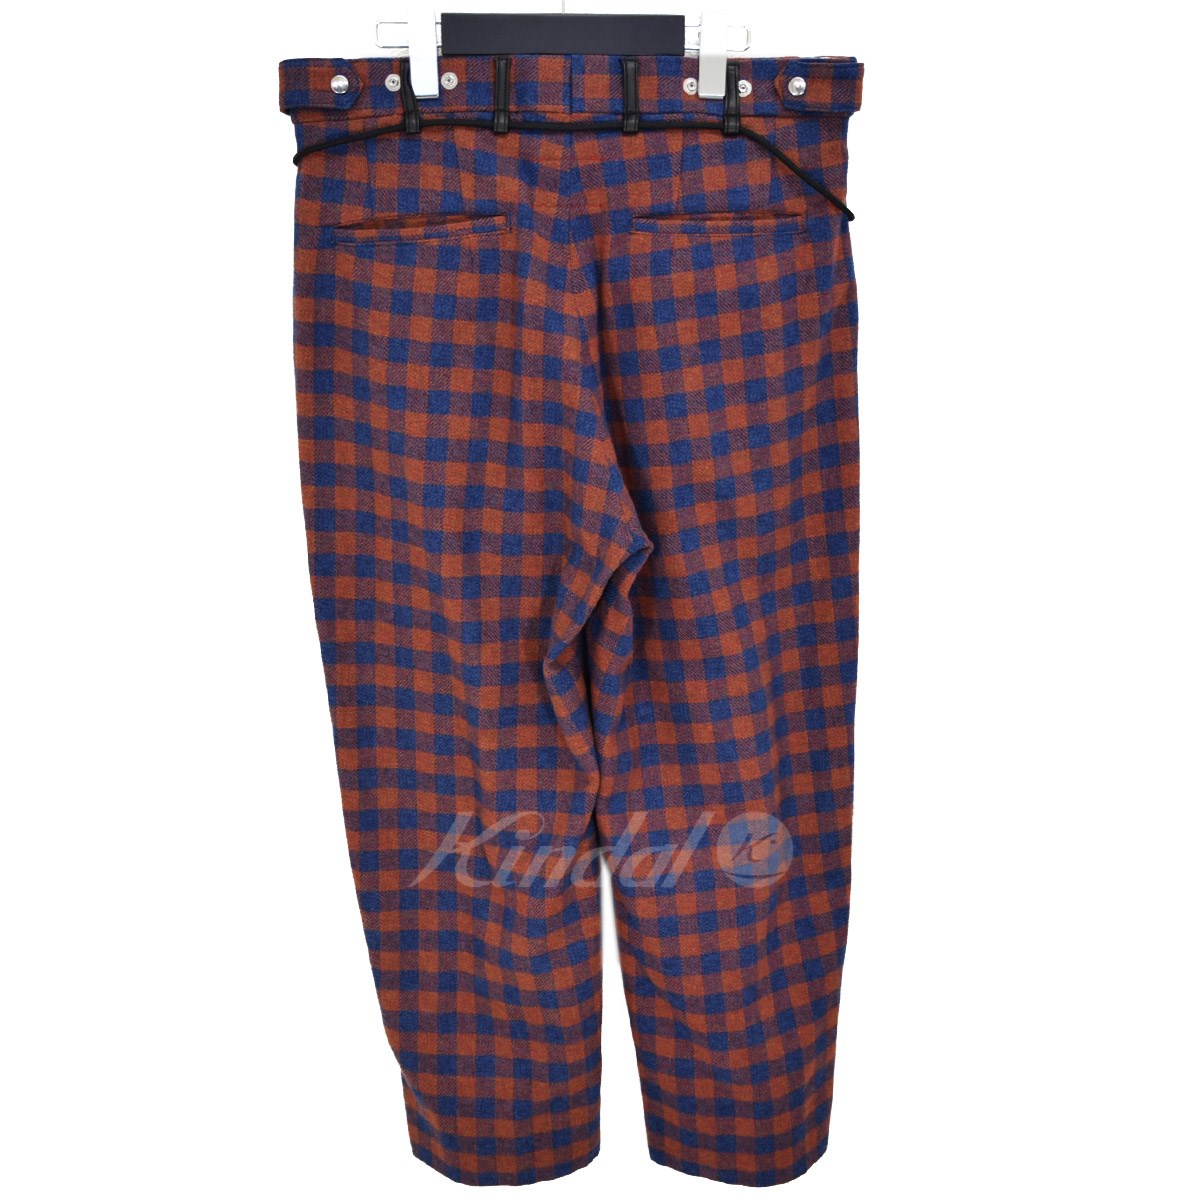 Adjustment Pajama pants チェックパジャマパンツ 2020AW